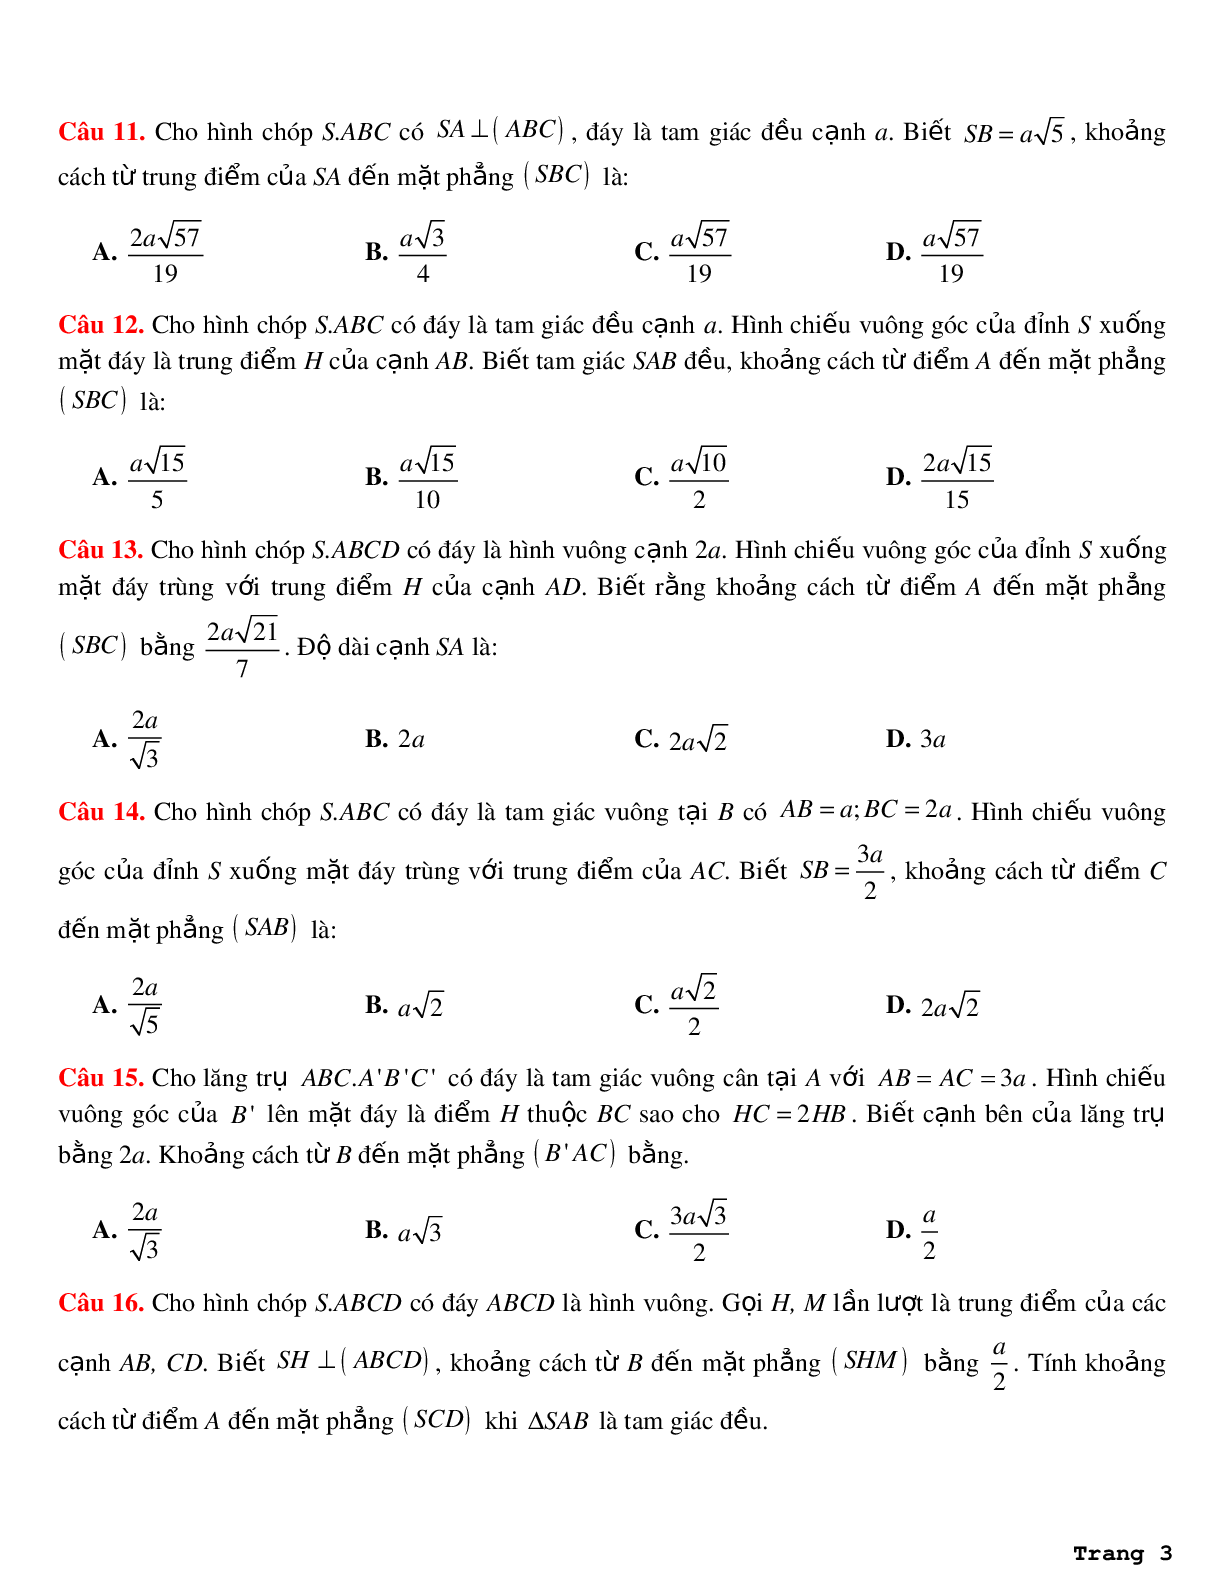 18 bài tập về khoảng cách từ điểm đến mặt phẳng (dạng 3) (trang 3)